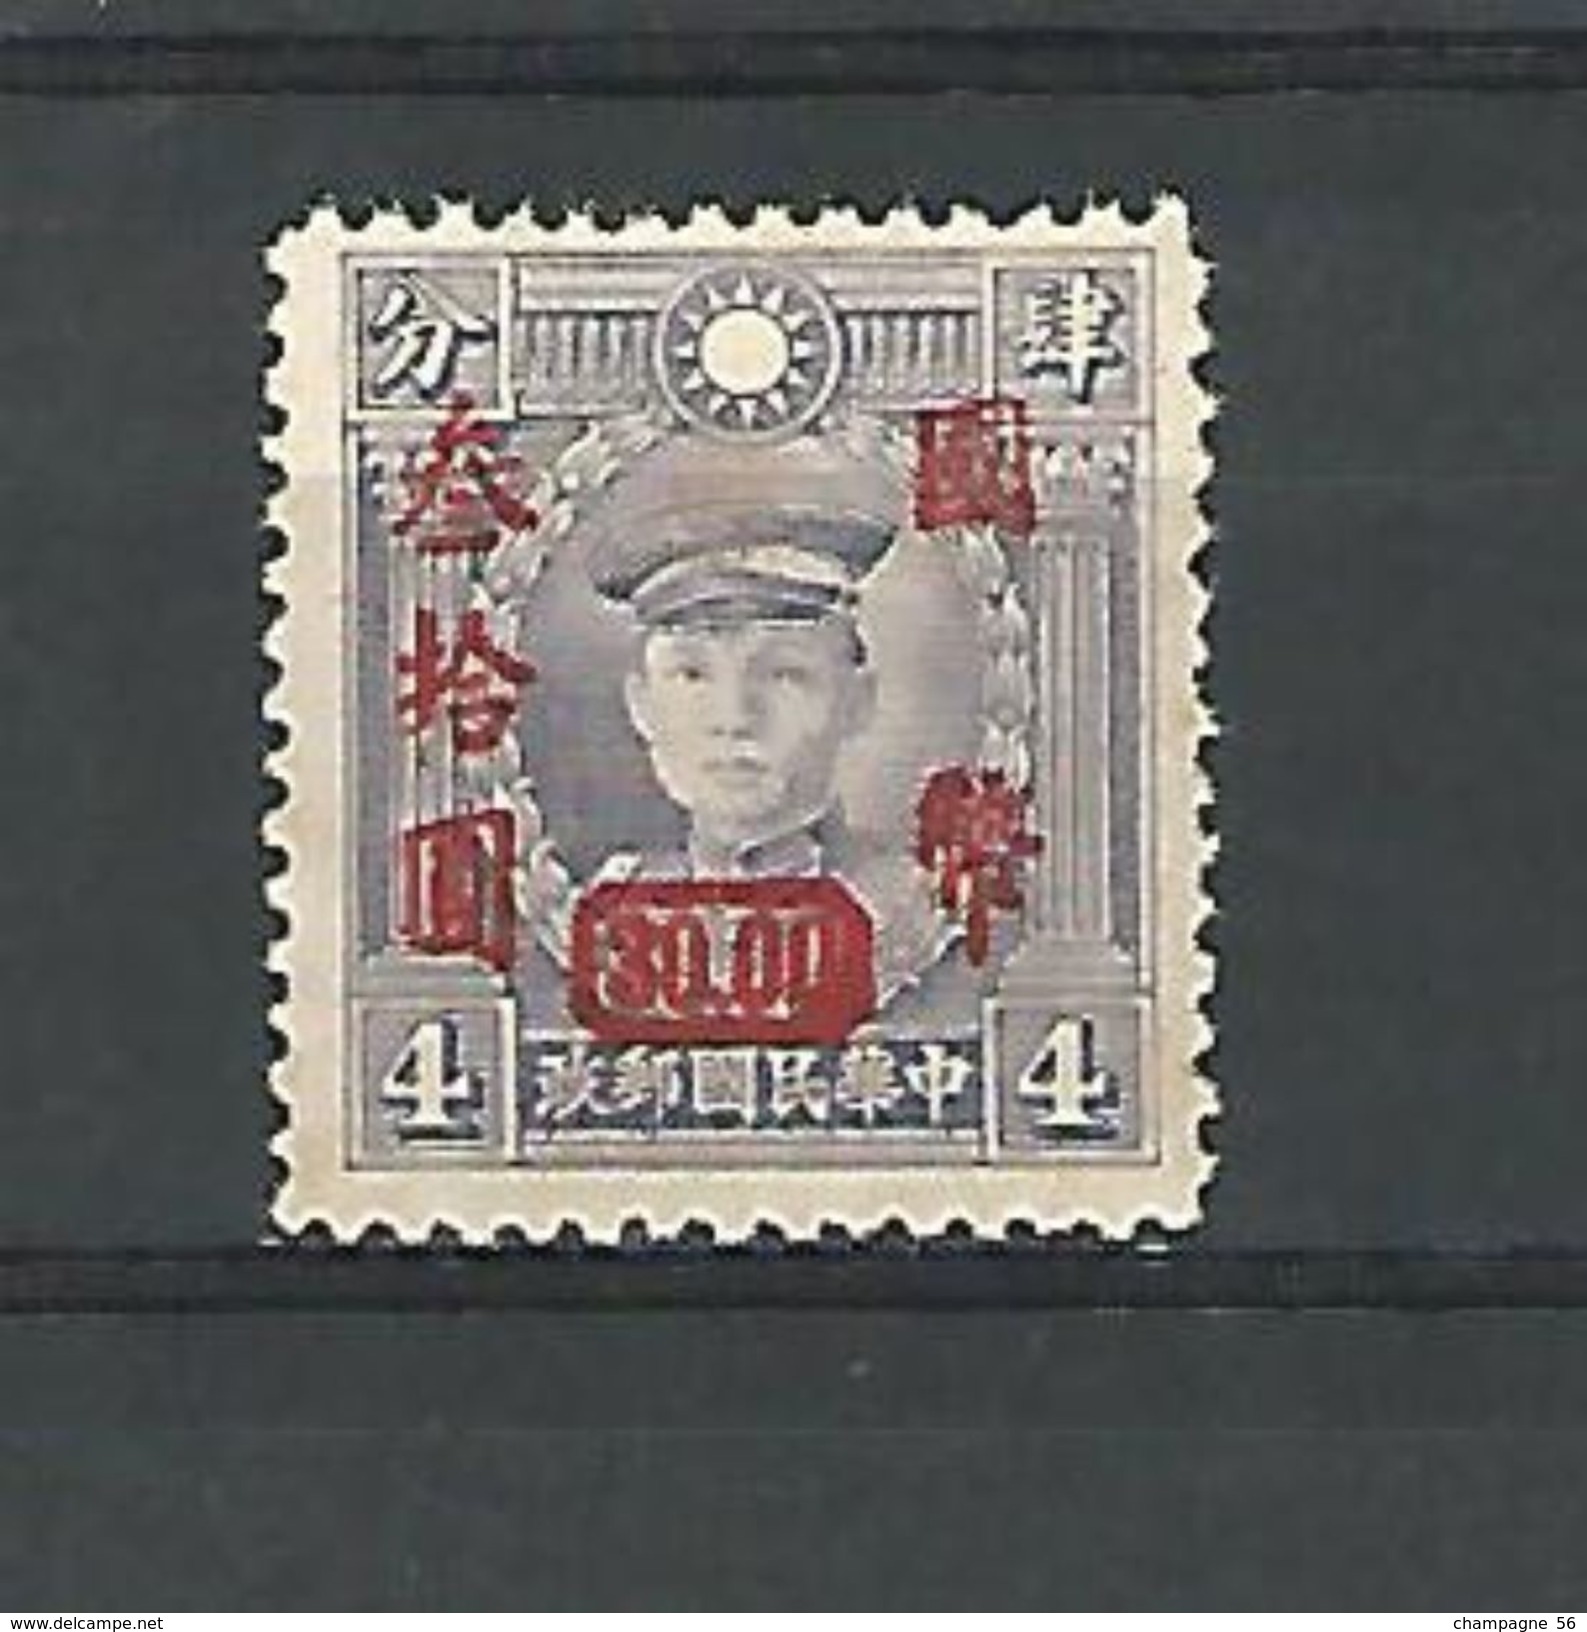 VARIÉTÉS 1945 N° 463  SURCHARGE 30.00 ROUGE 4  EMPEREUR HIROHITO NEUFS  GOMME - Chine Centrale 1948-49